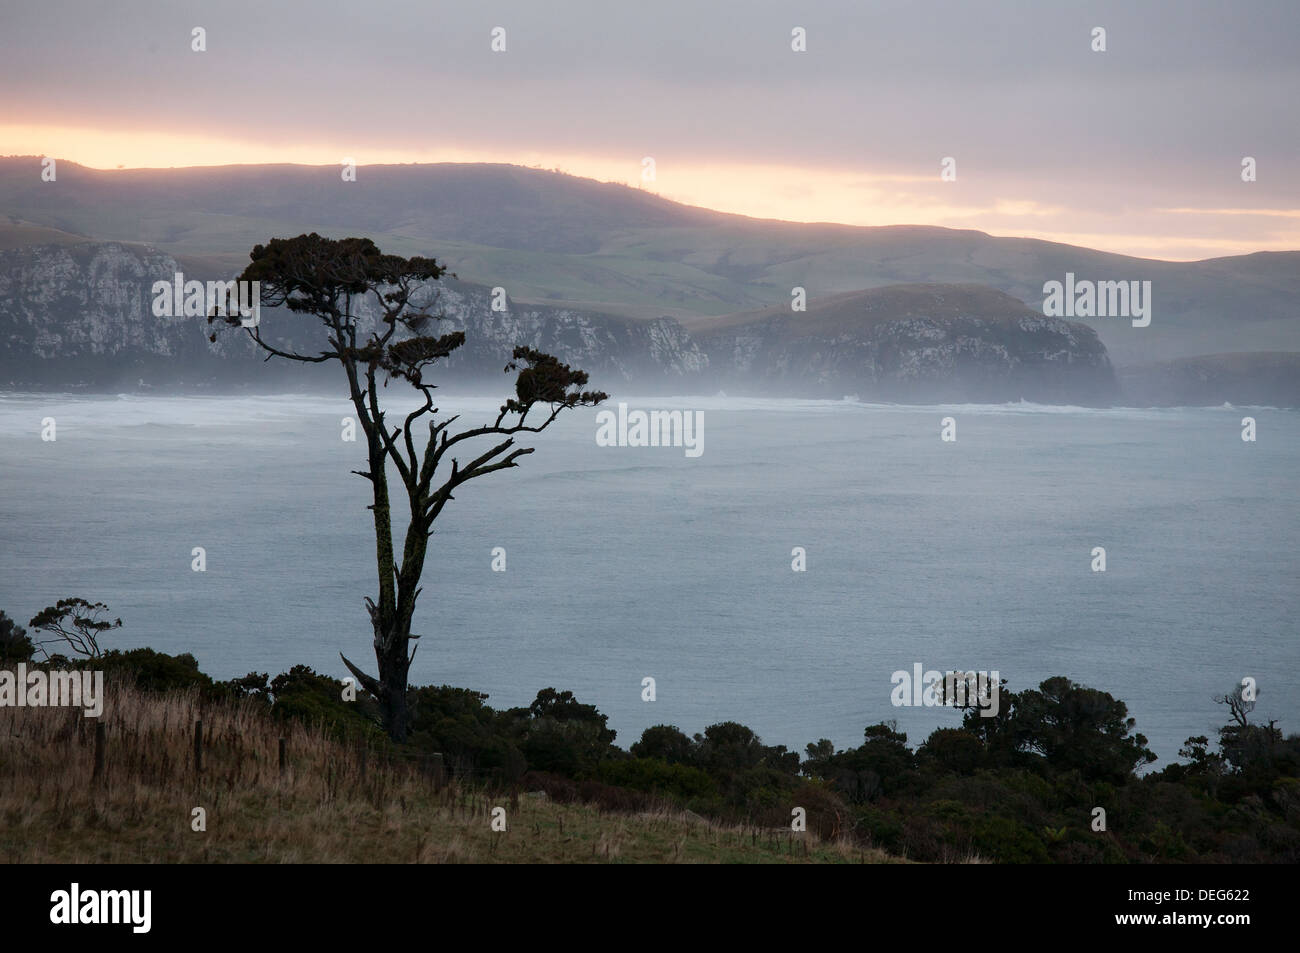 Une silhouette solitaire de l'arbre en face d'une vue sur la côte de l'île du Sud, Nouvelle-Zélande. Banque D'Images